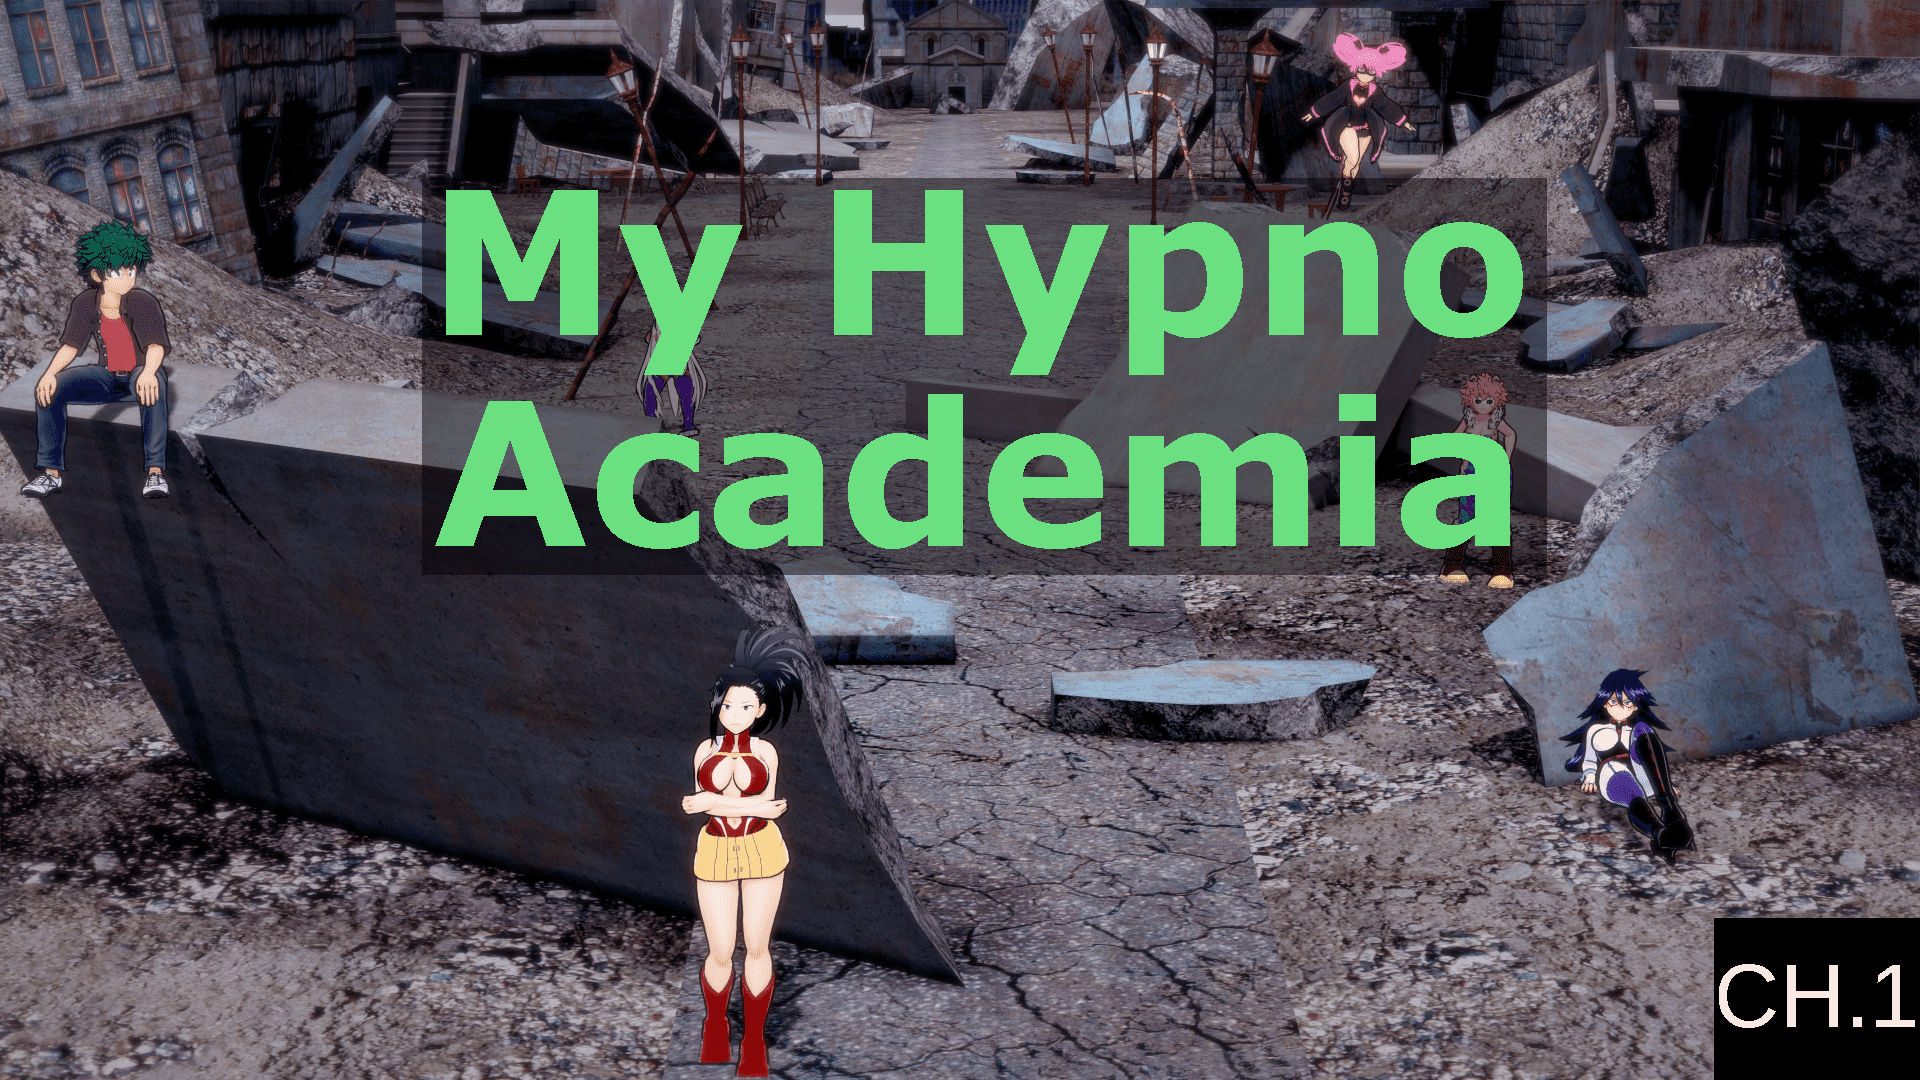 My hypno academia